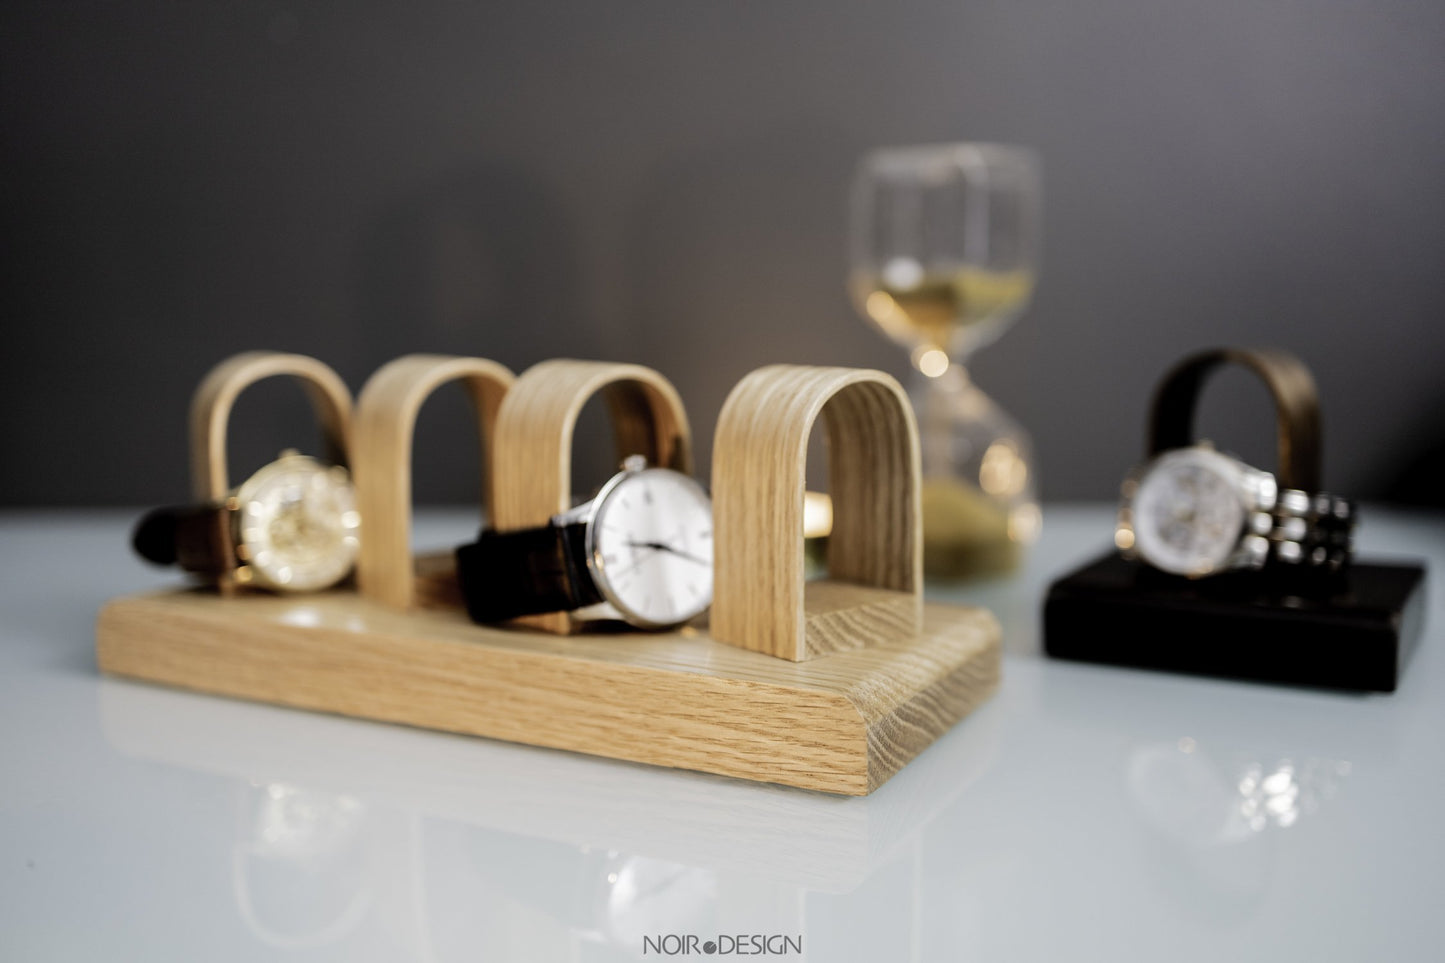 Luxury Walnut Quad Watch Stand Holder - Watch Display - NOIR.DESIGN